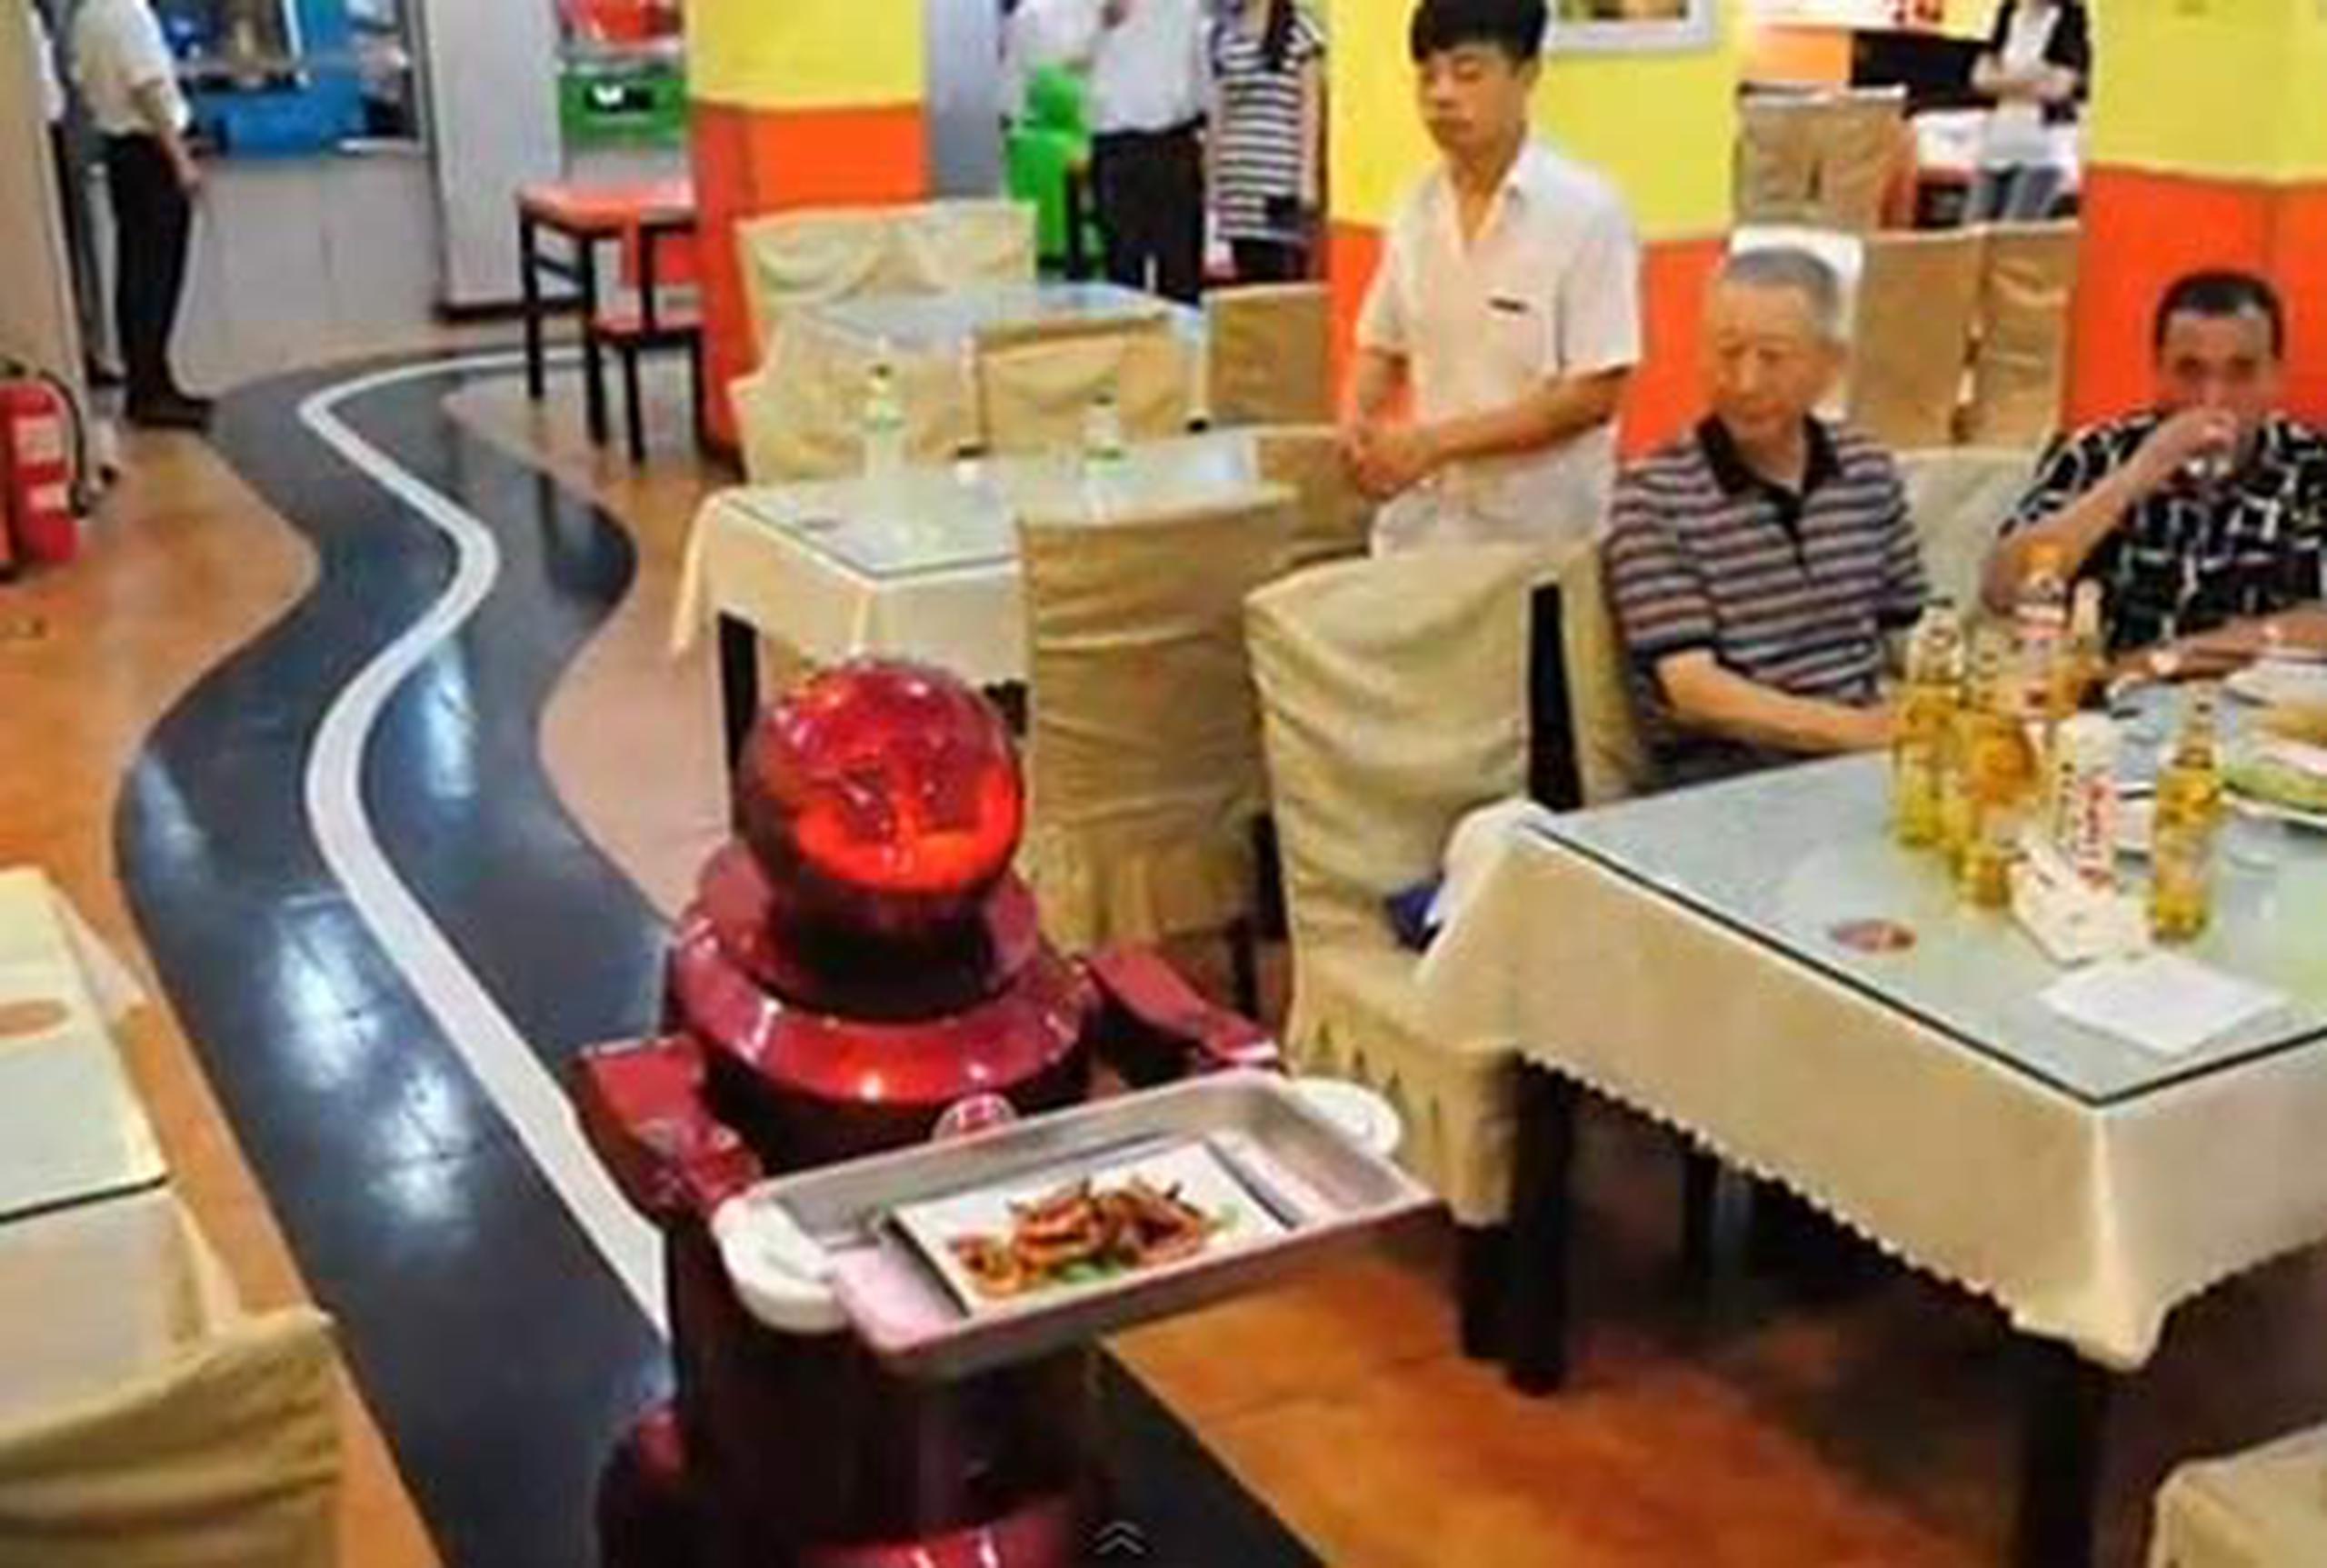 El local cuenta con robots preparados para entregar los pedidos de comida, llevar la carta de platos y bebidas y dar la bienvenida a los comensales. (YouTube)